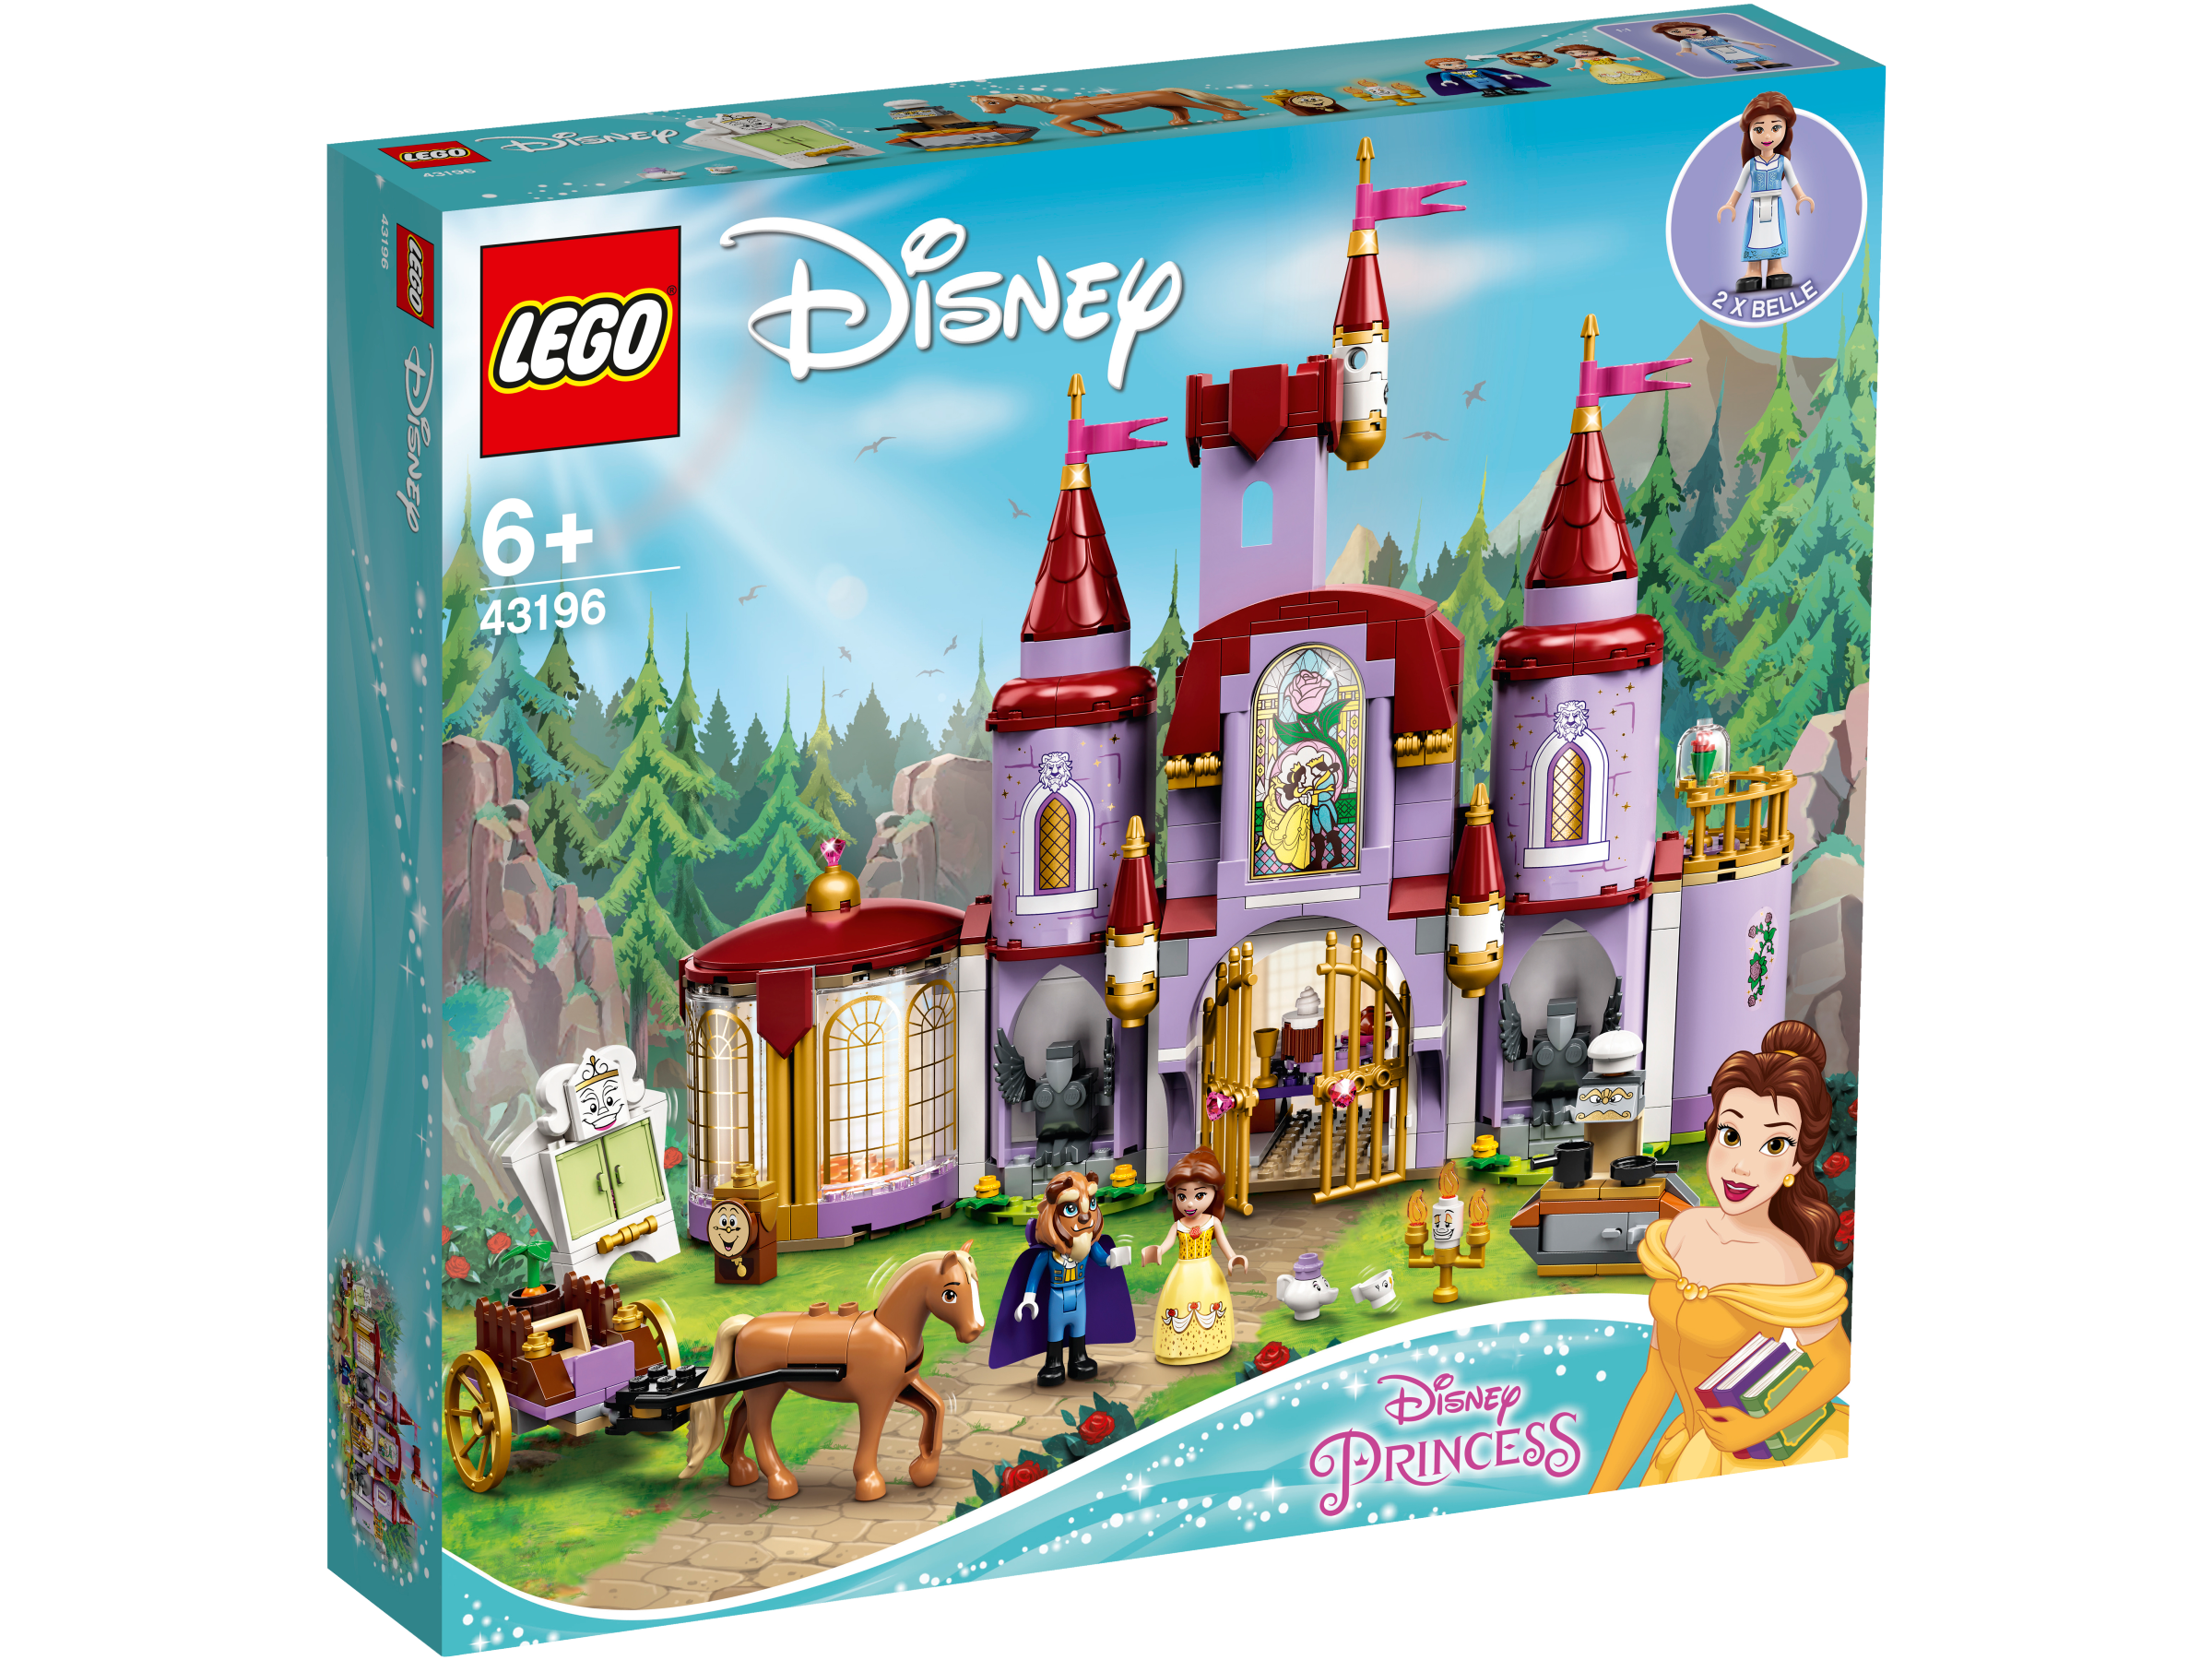 Lego Disney 43214 Principessa Rapunzel Rotante